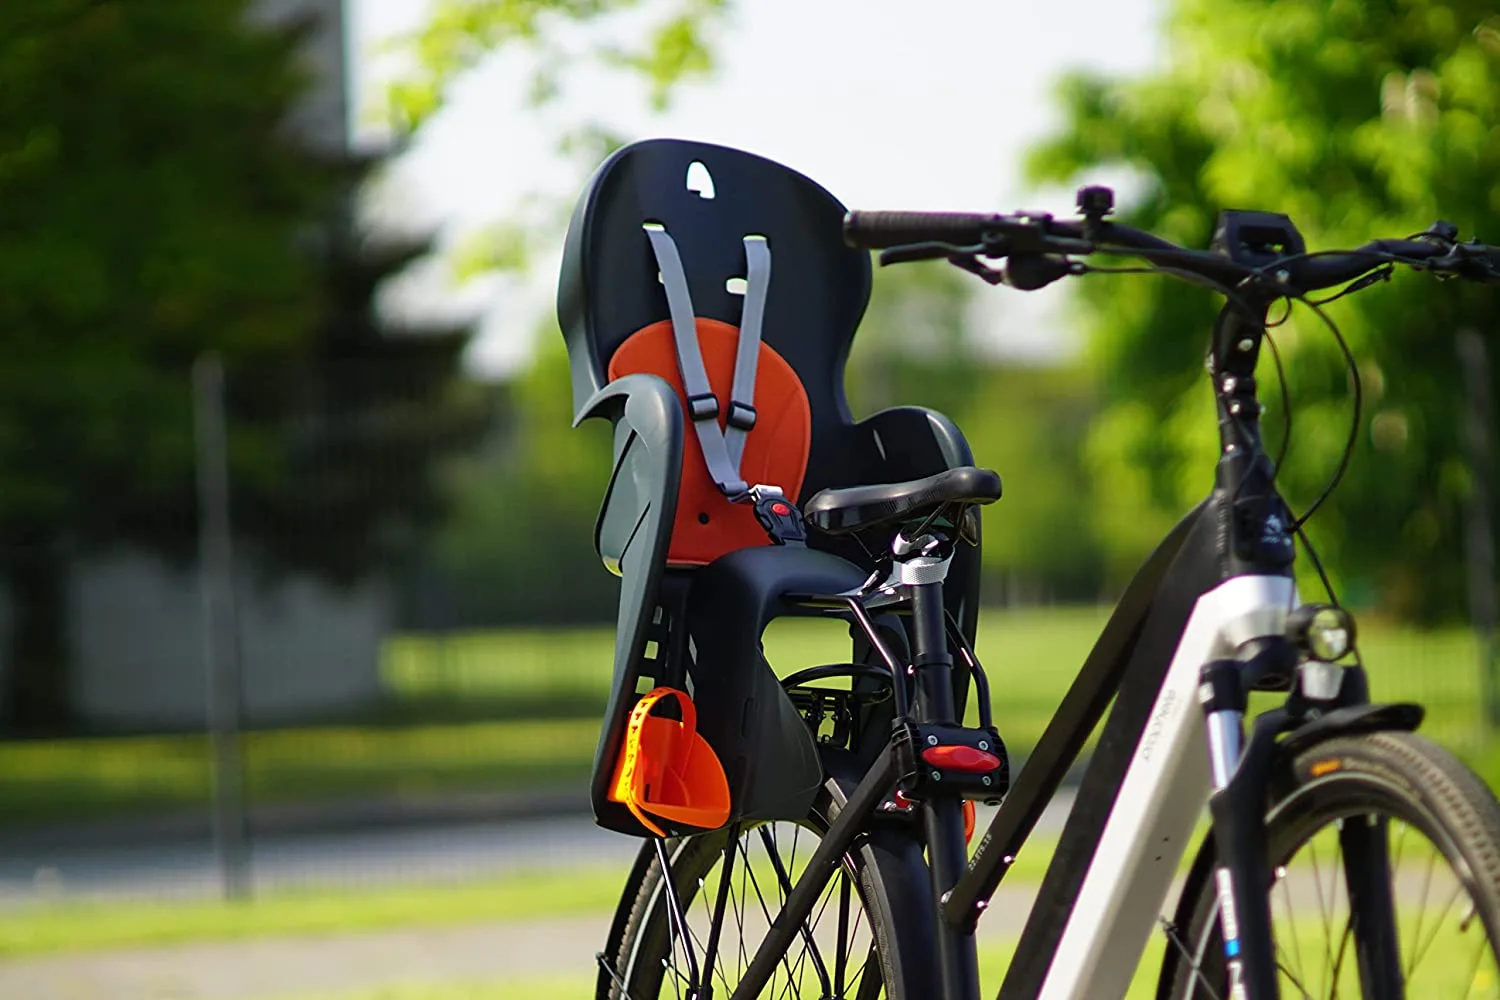 Prophete 5 - Silla Infantil para Bicicleta con cinturón, Color Gris y Naranja